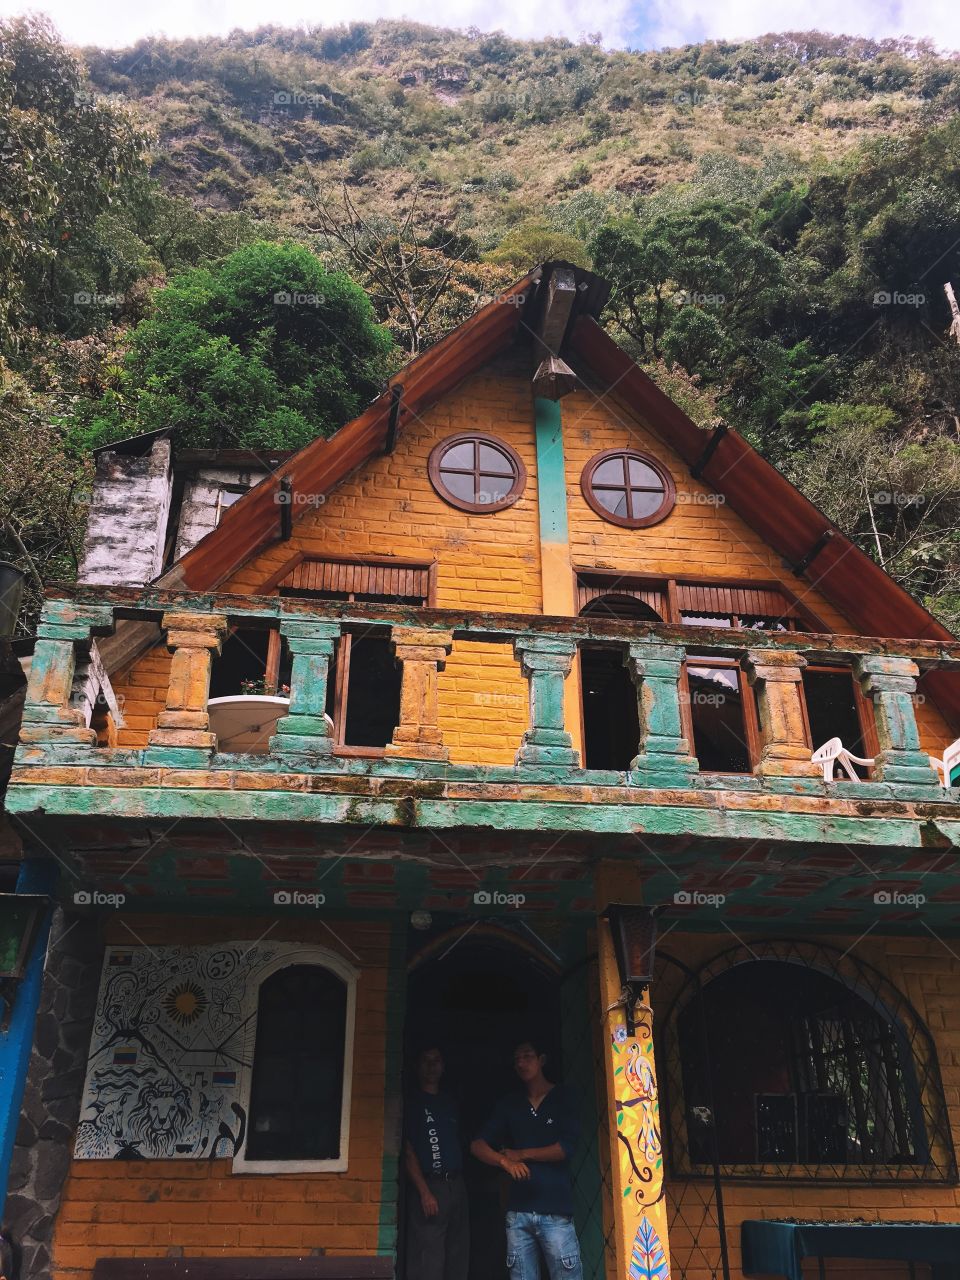 The original historic tree house of Ecuador